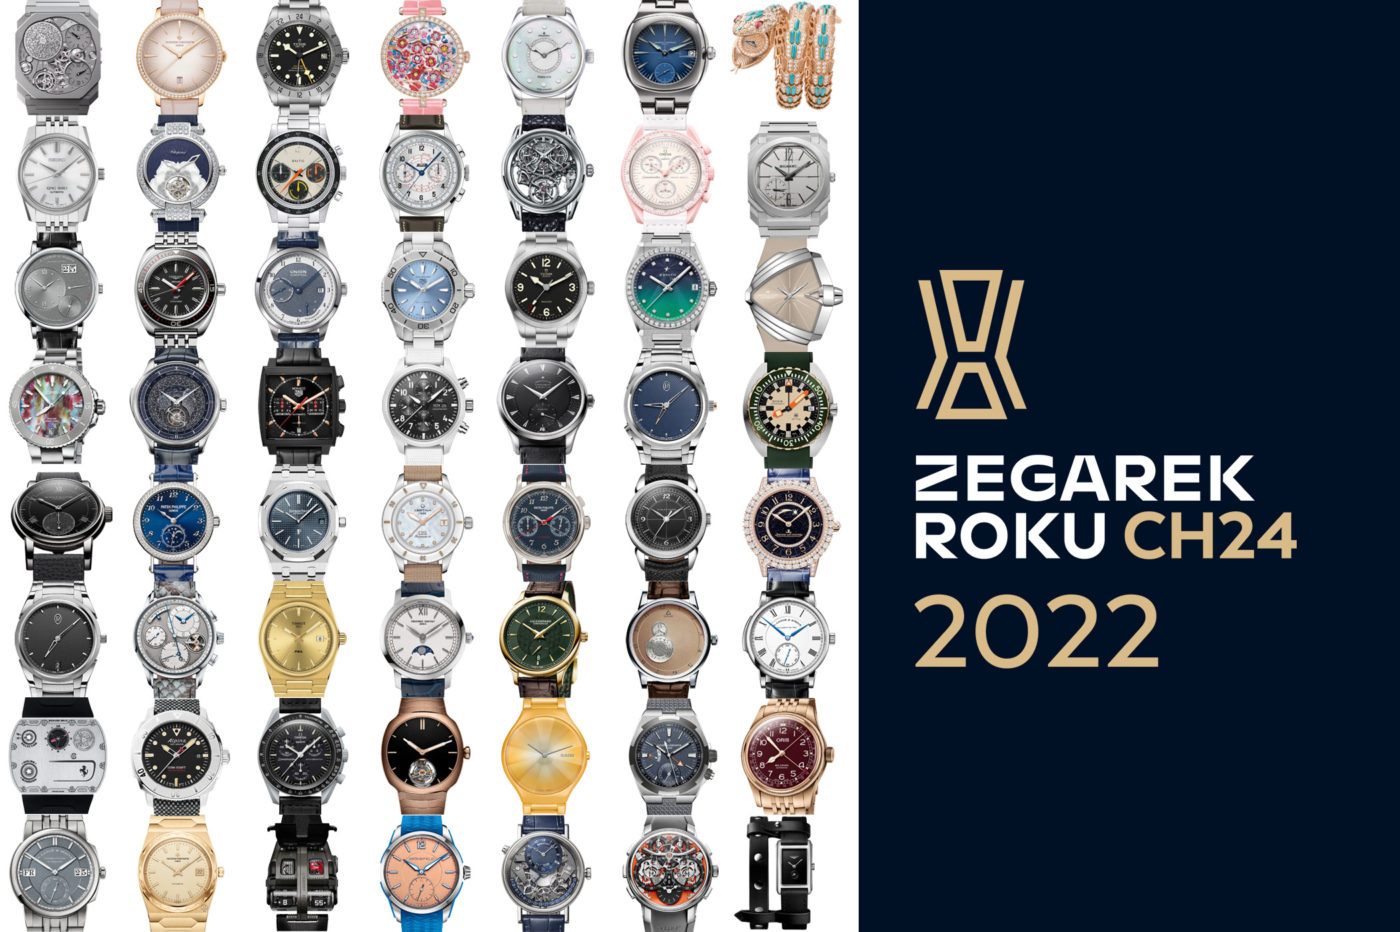 Zegarek Roku CH24 – edycja 2022 w nowej odsłonie!